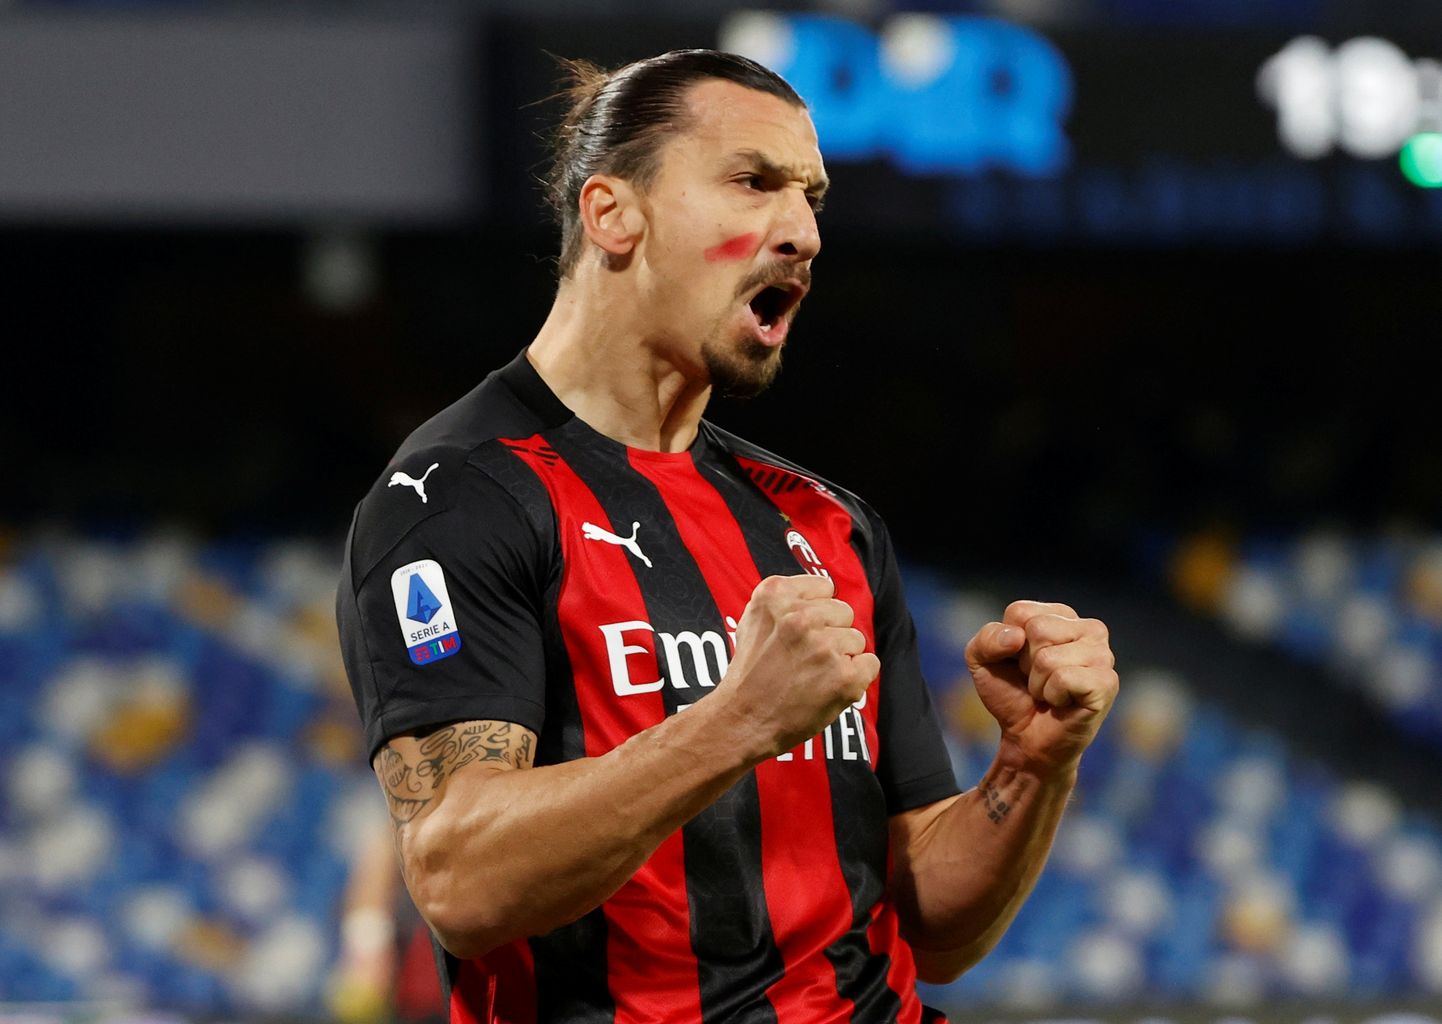 Itaalia jalgpalliklubi AC Milan megatäht Zlatan Ibrahimovic maalis möödunud nädalavahetusel toimunud matšiks põsele punase märgi  ja ütles EI naistevastasele vägivallale